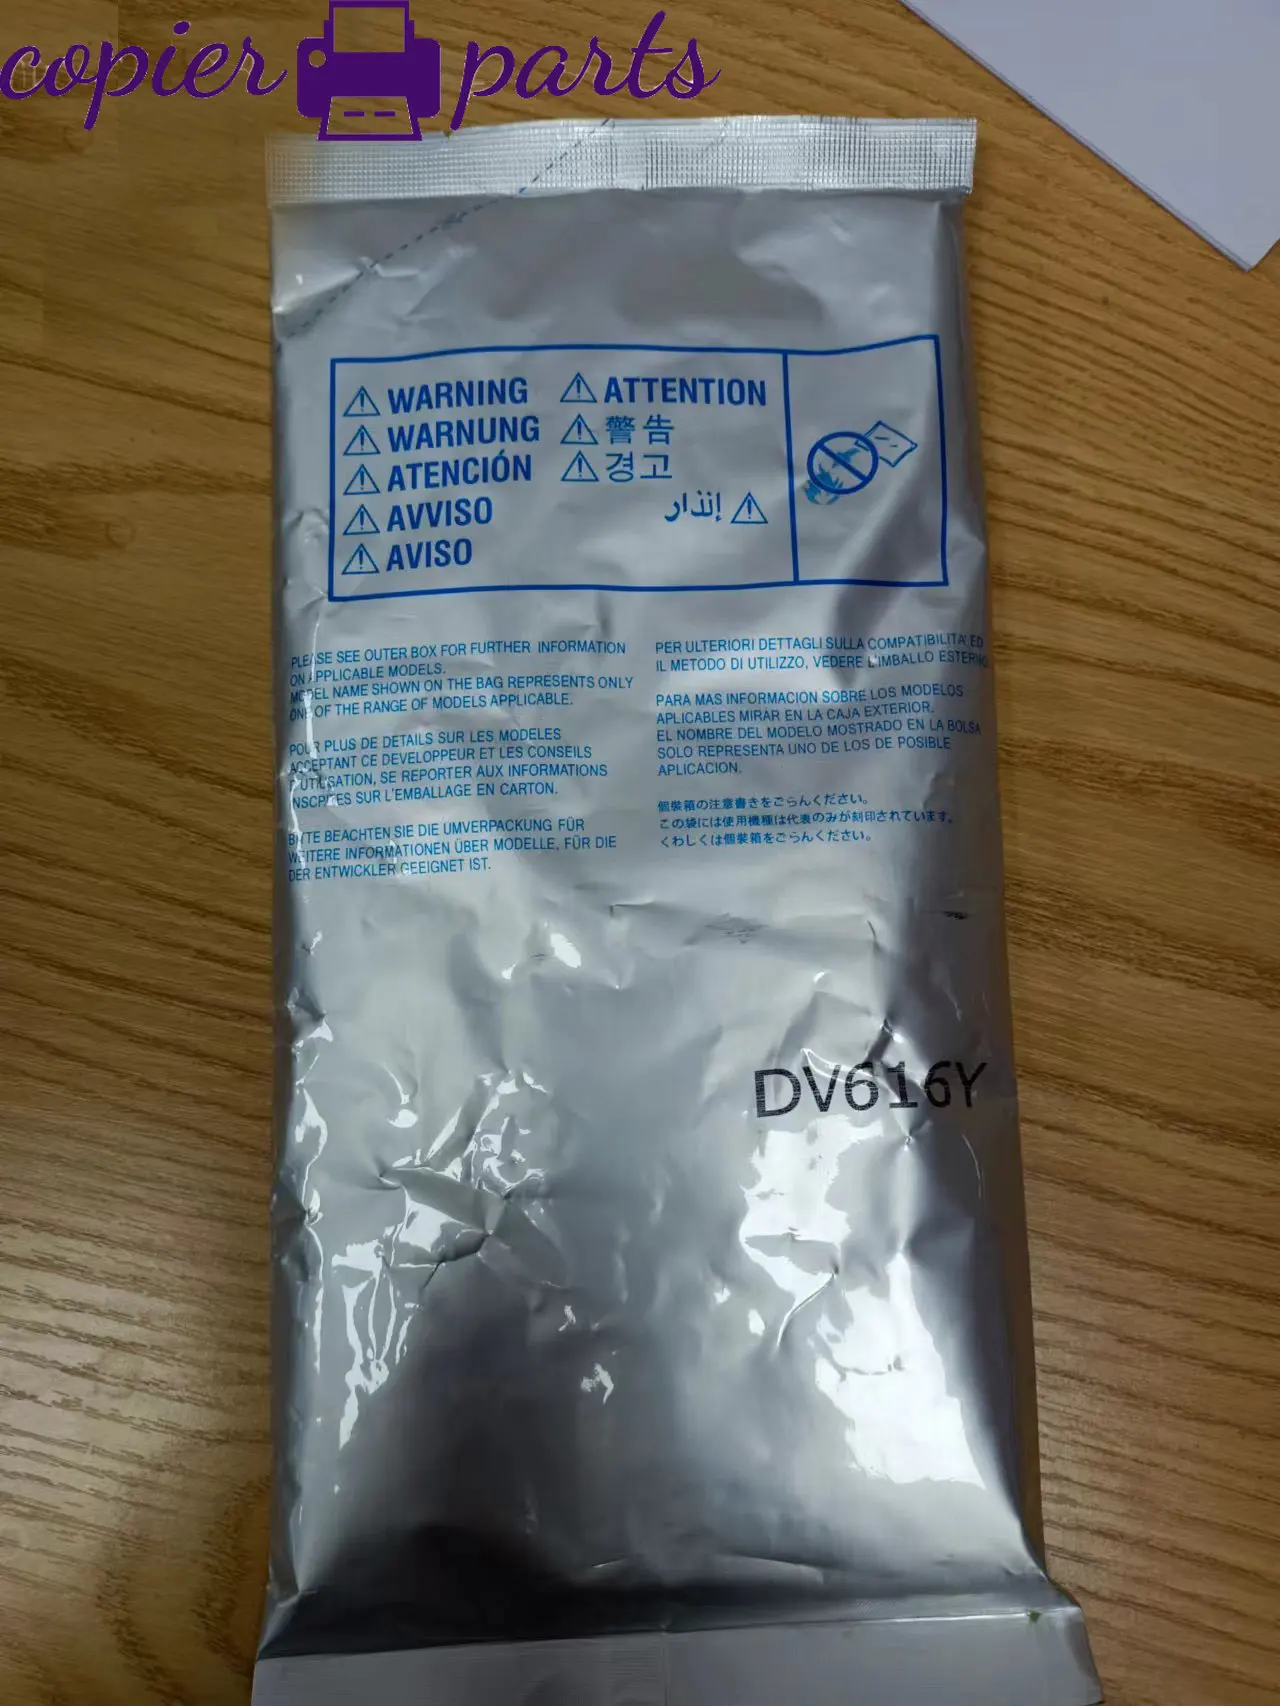 

Imported DV616 Developer Iron Powder for Konica Minolta Bizhub C1085 C1100 C6085 C6110 C8000 DV-616 1100G CMYK